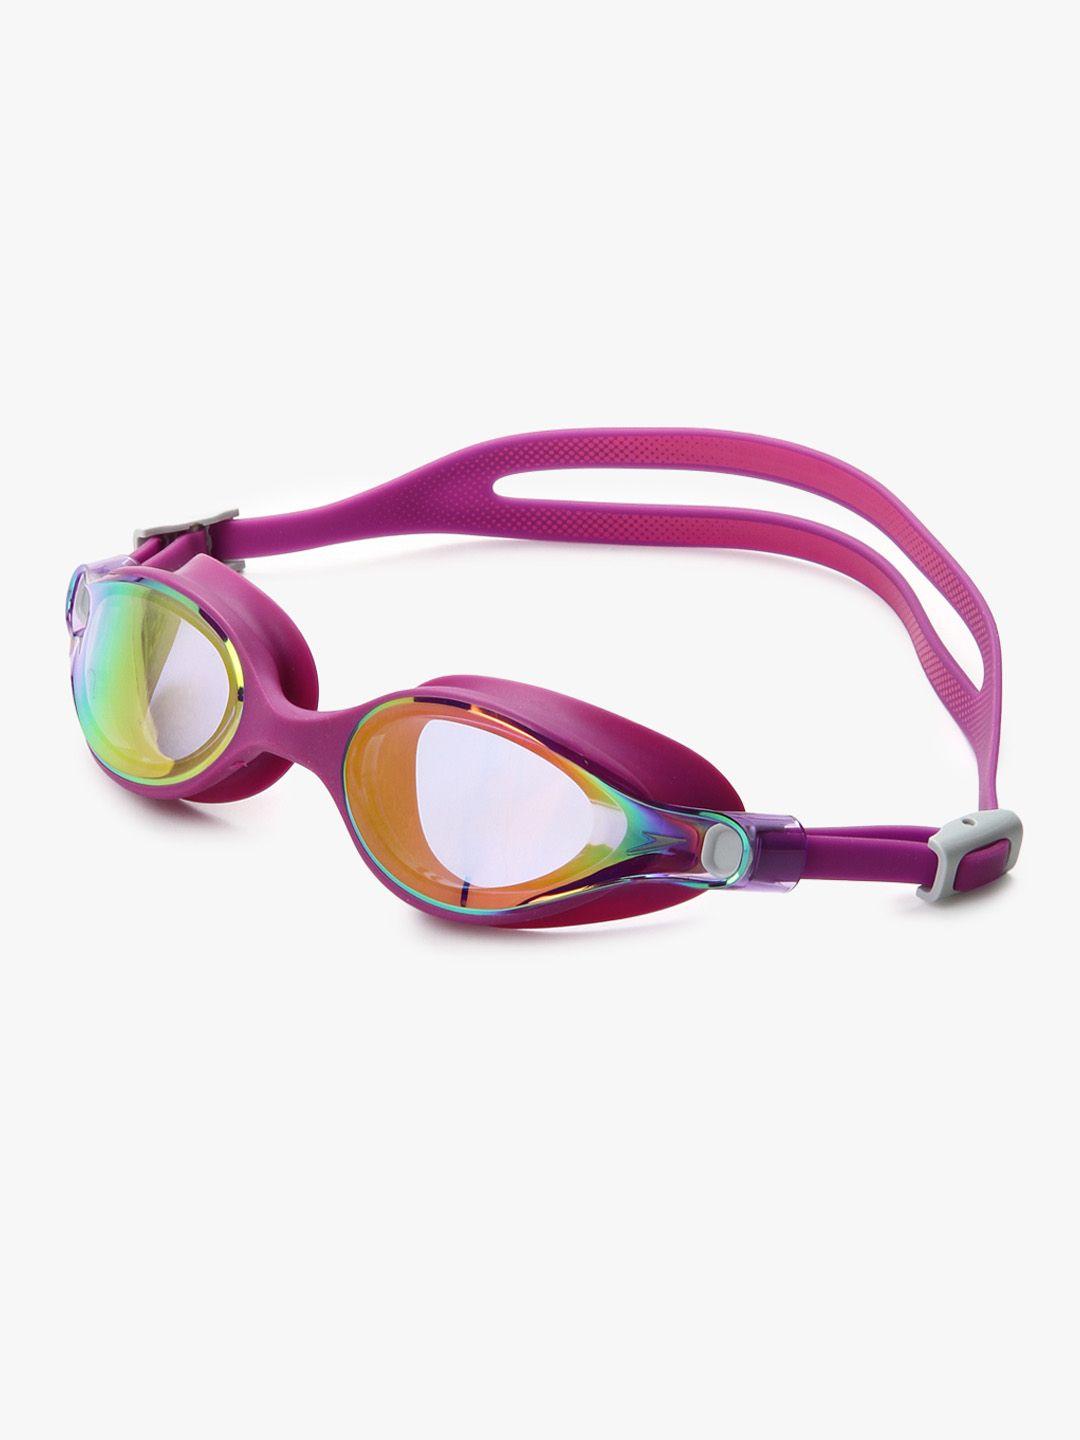 speedo women purple swimming goggles 810962b579